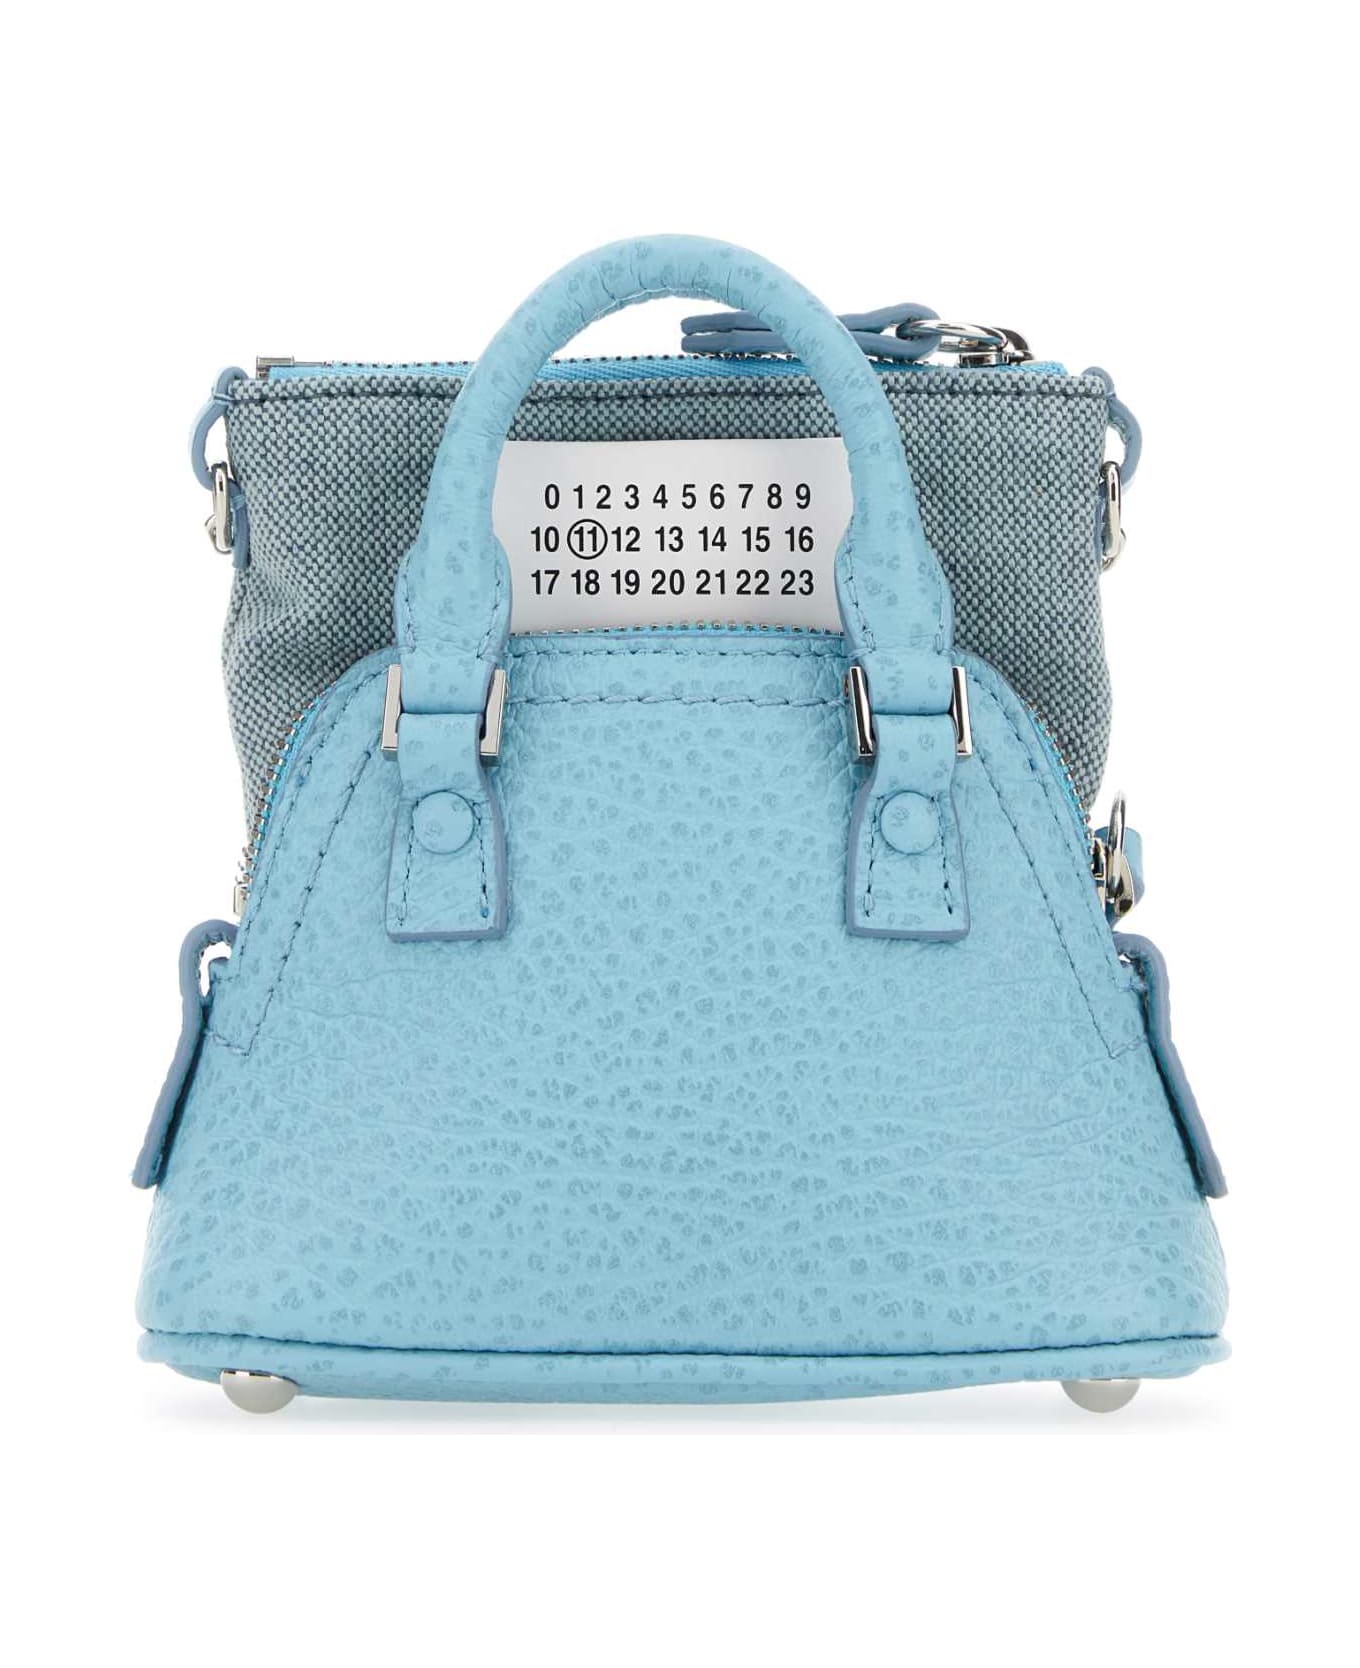 Maison Margiela Light Blue Leather And Fabric 5ac Classique Baby Handbag - AQUA